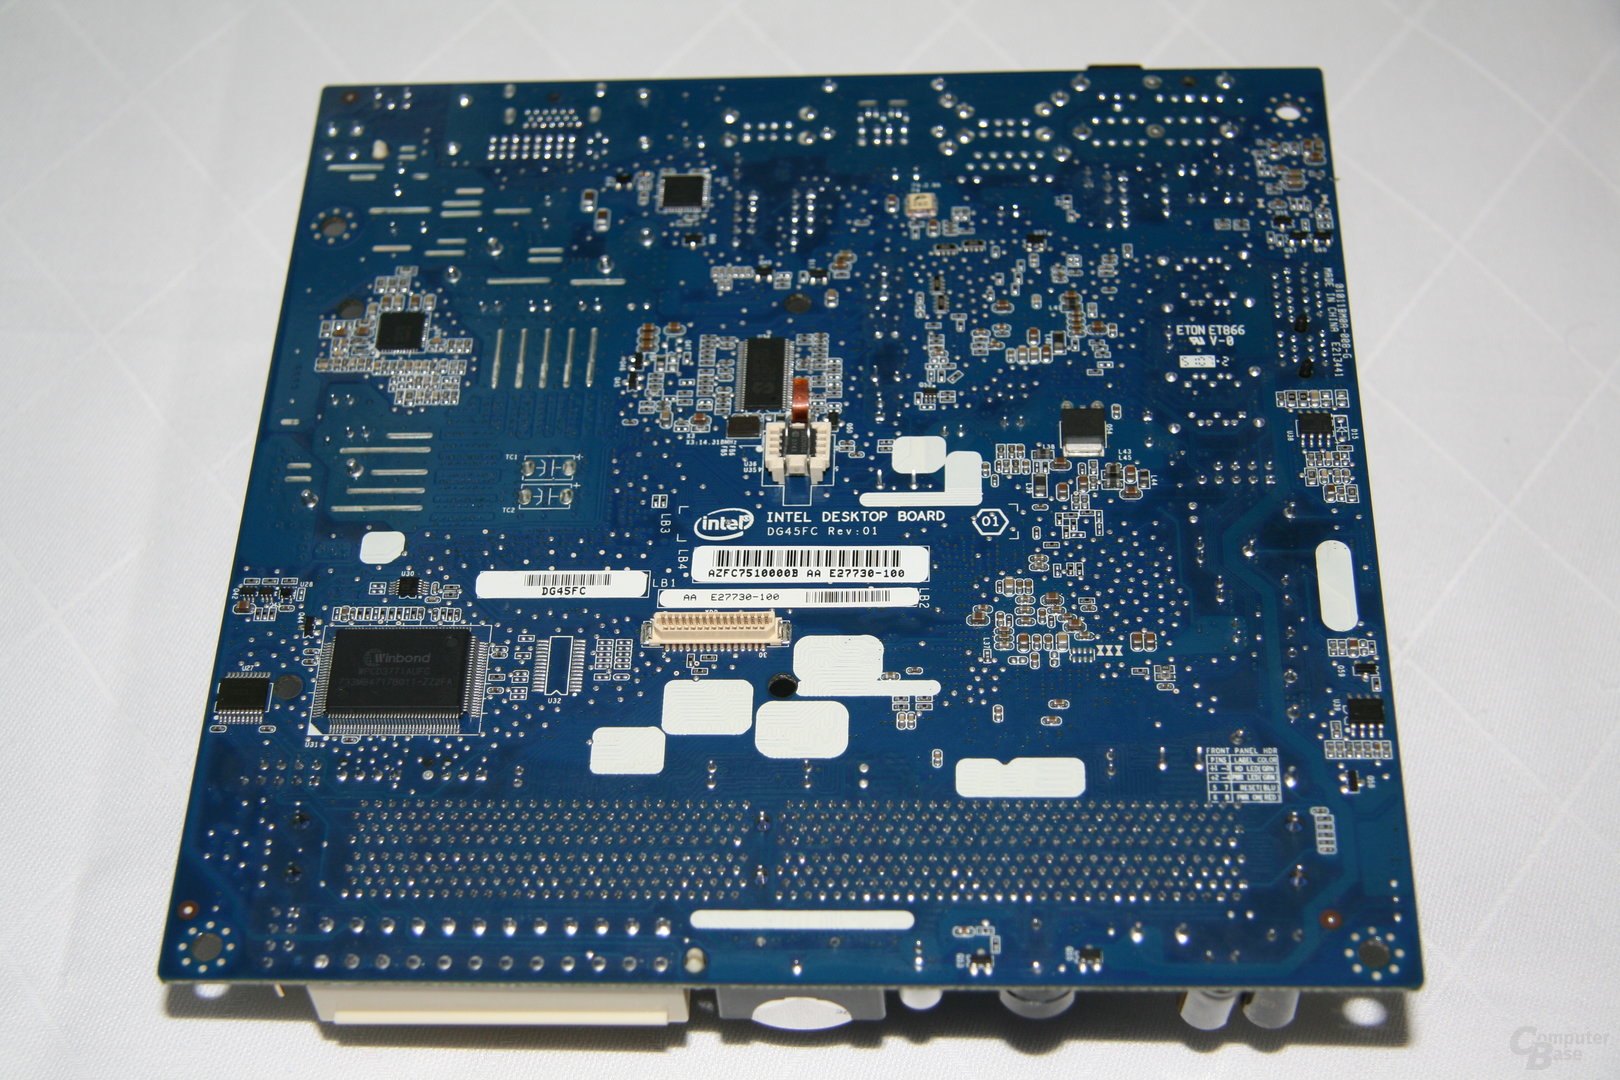 Intel DG45FC Mini-ITX-Mainboard mit G45